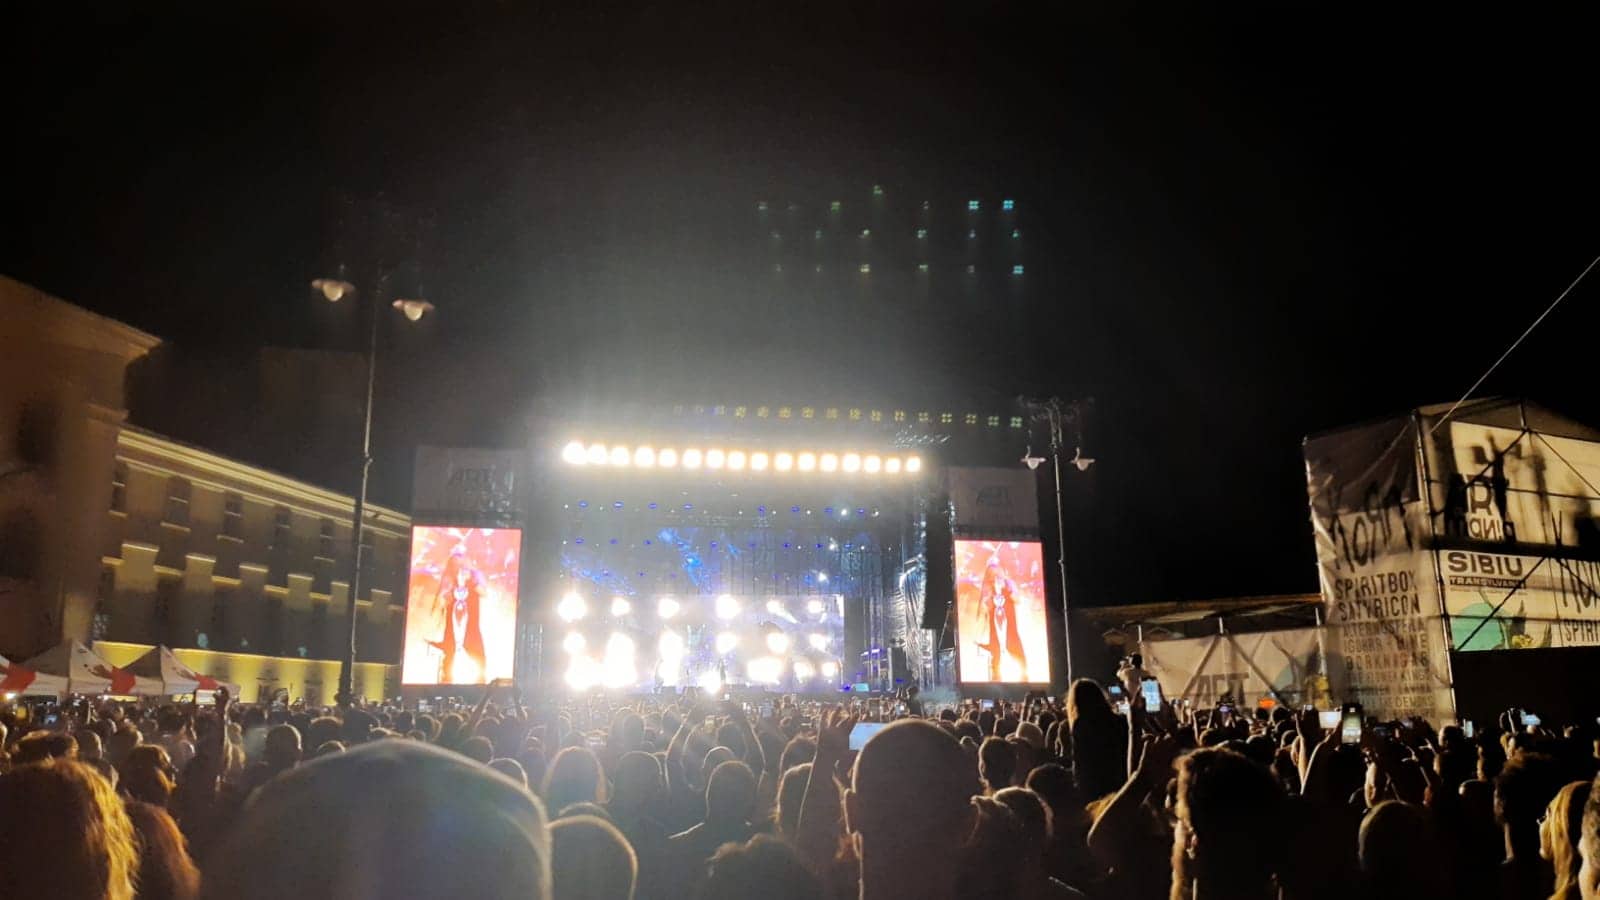 peste 10.000 de spectatori, la concertul korn de la artmania. formația americană a făcut show pe scena din piața mare (foto, video)